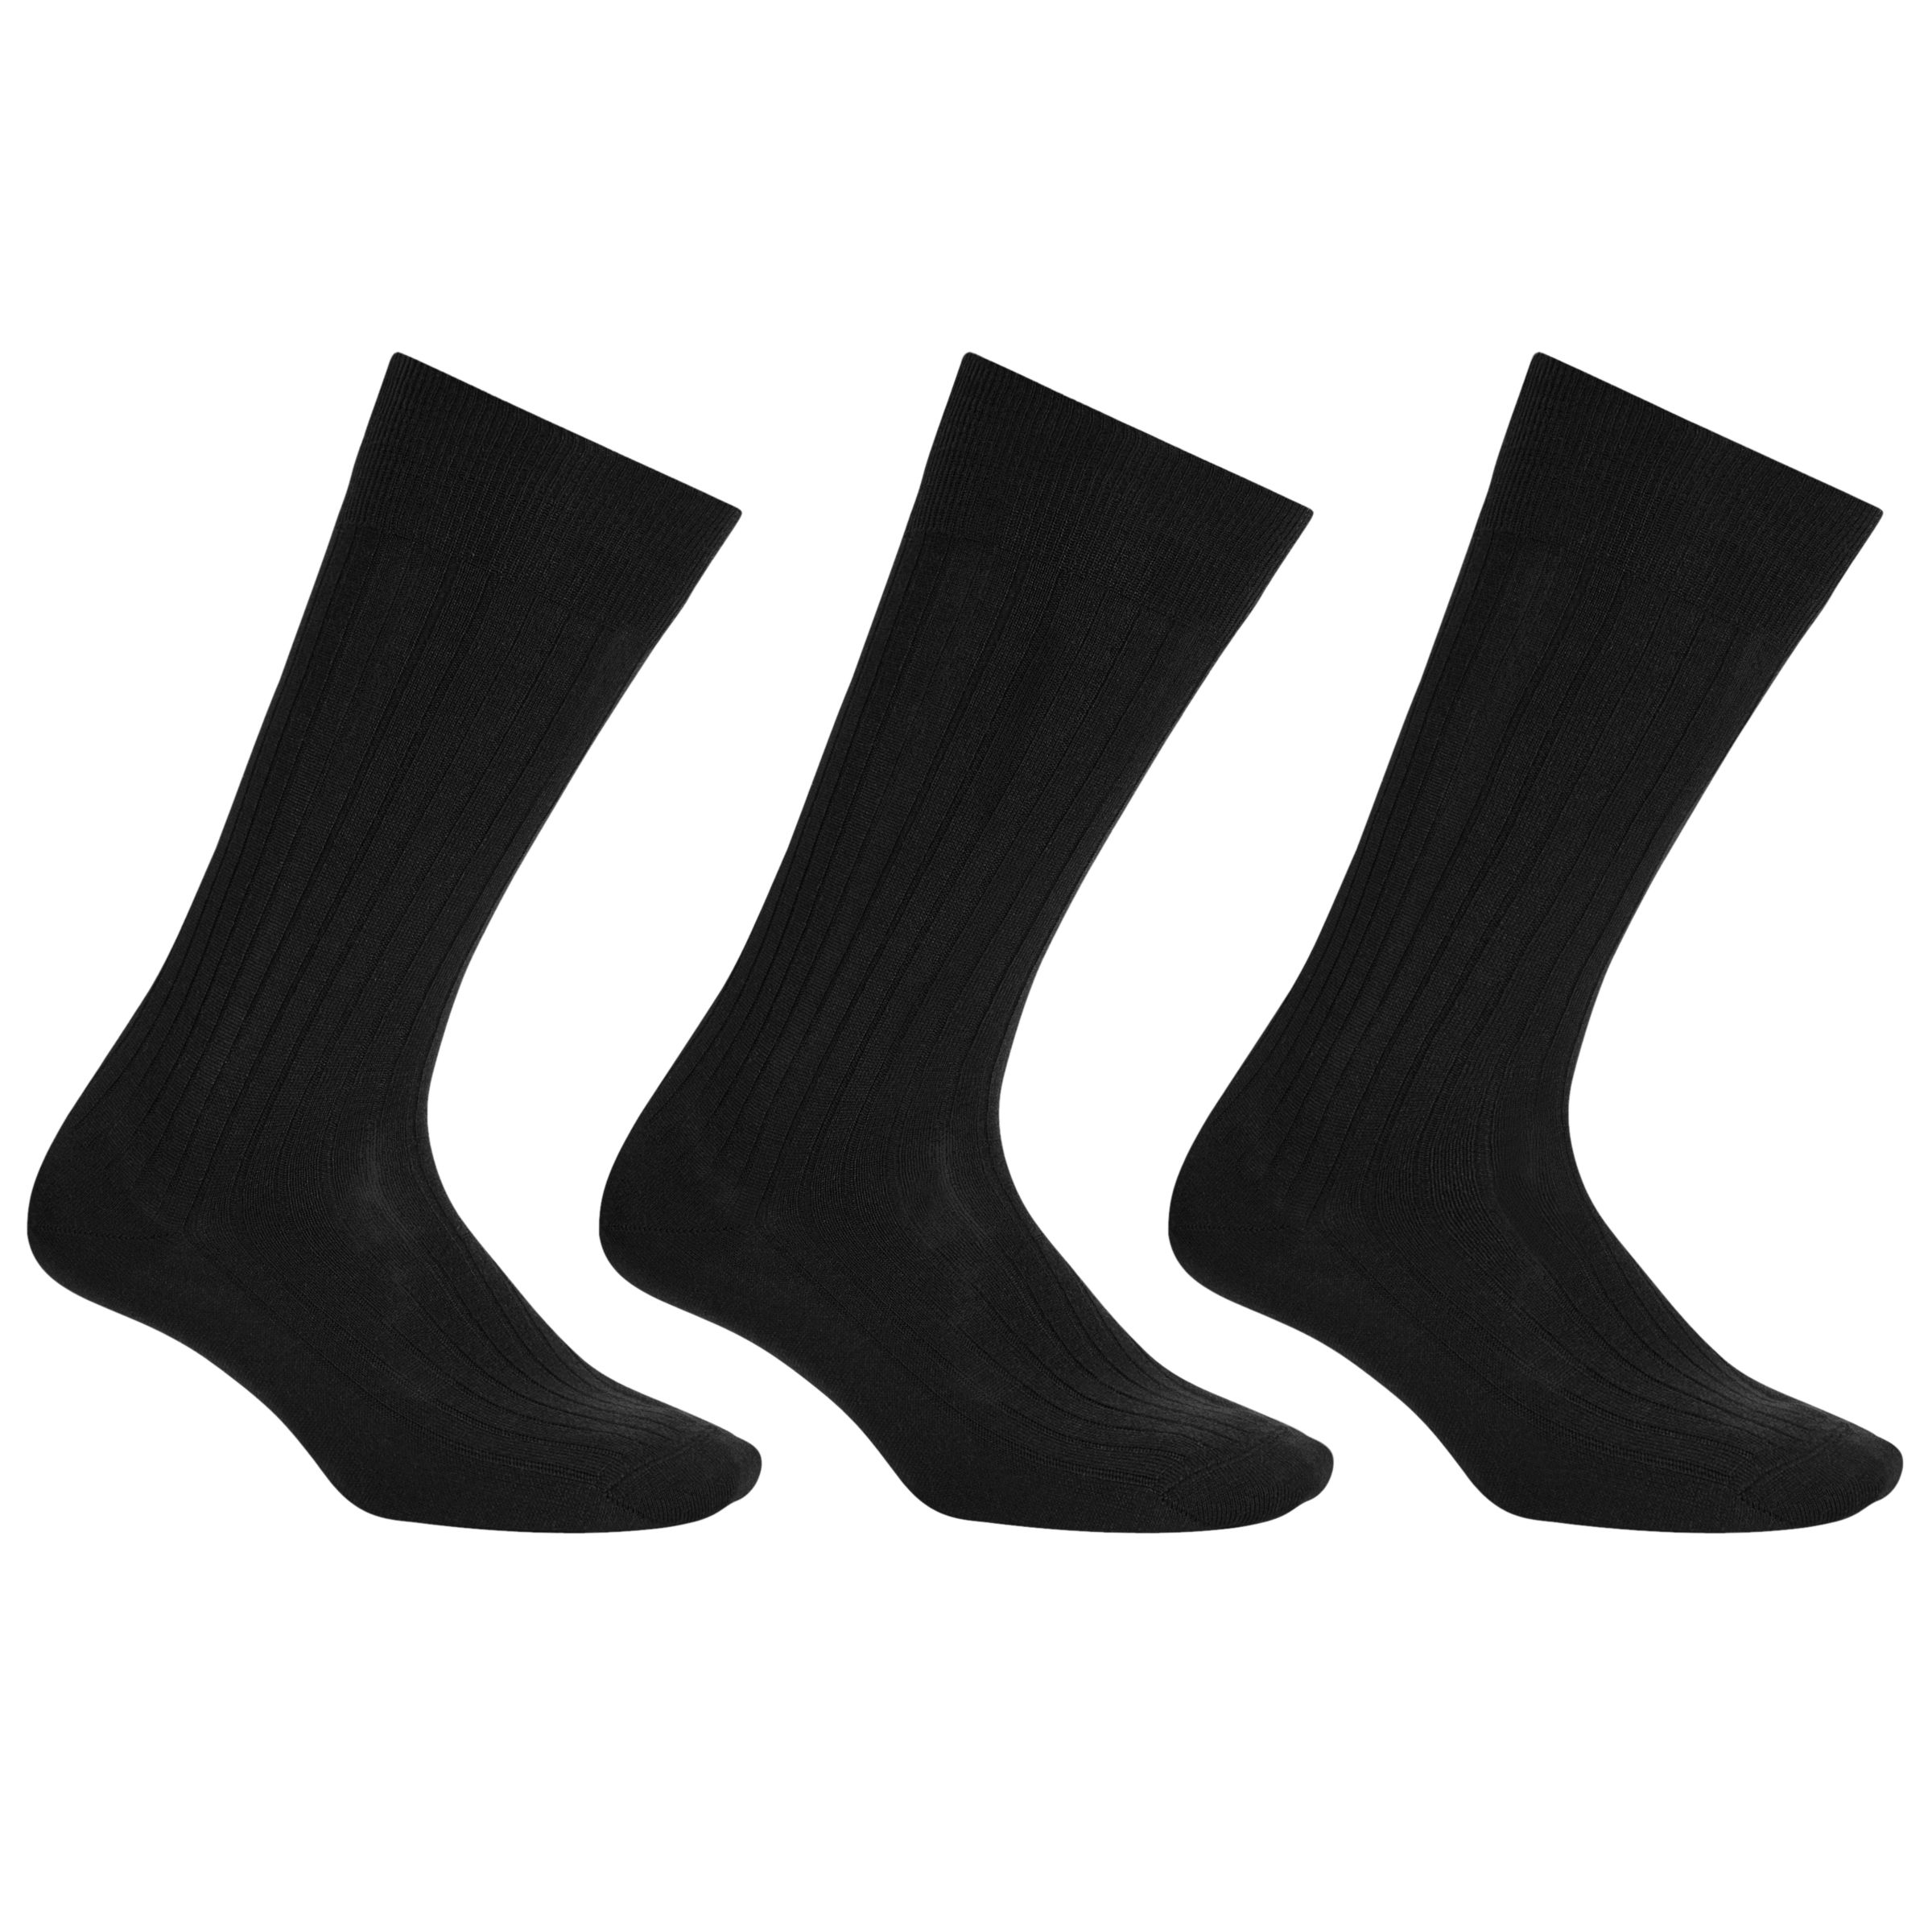 John Lewis & Partners Wool Rich Long Socks, Pack of 3, Black, S